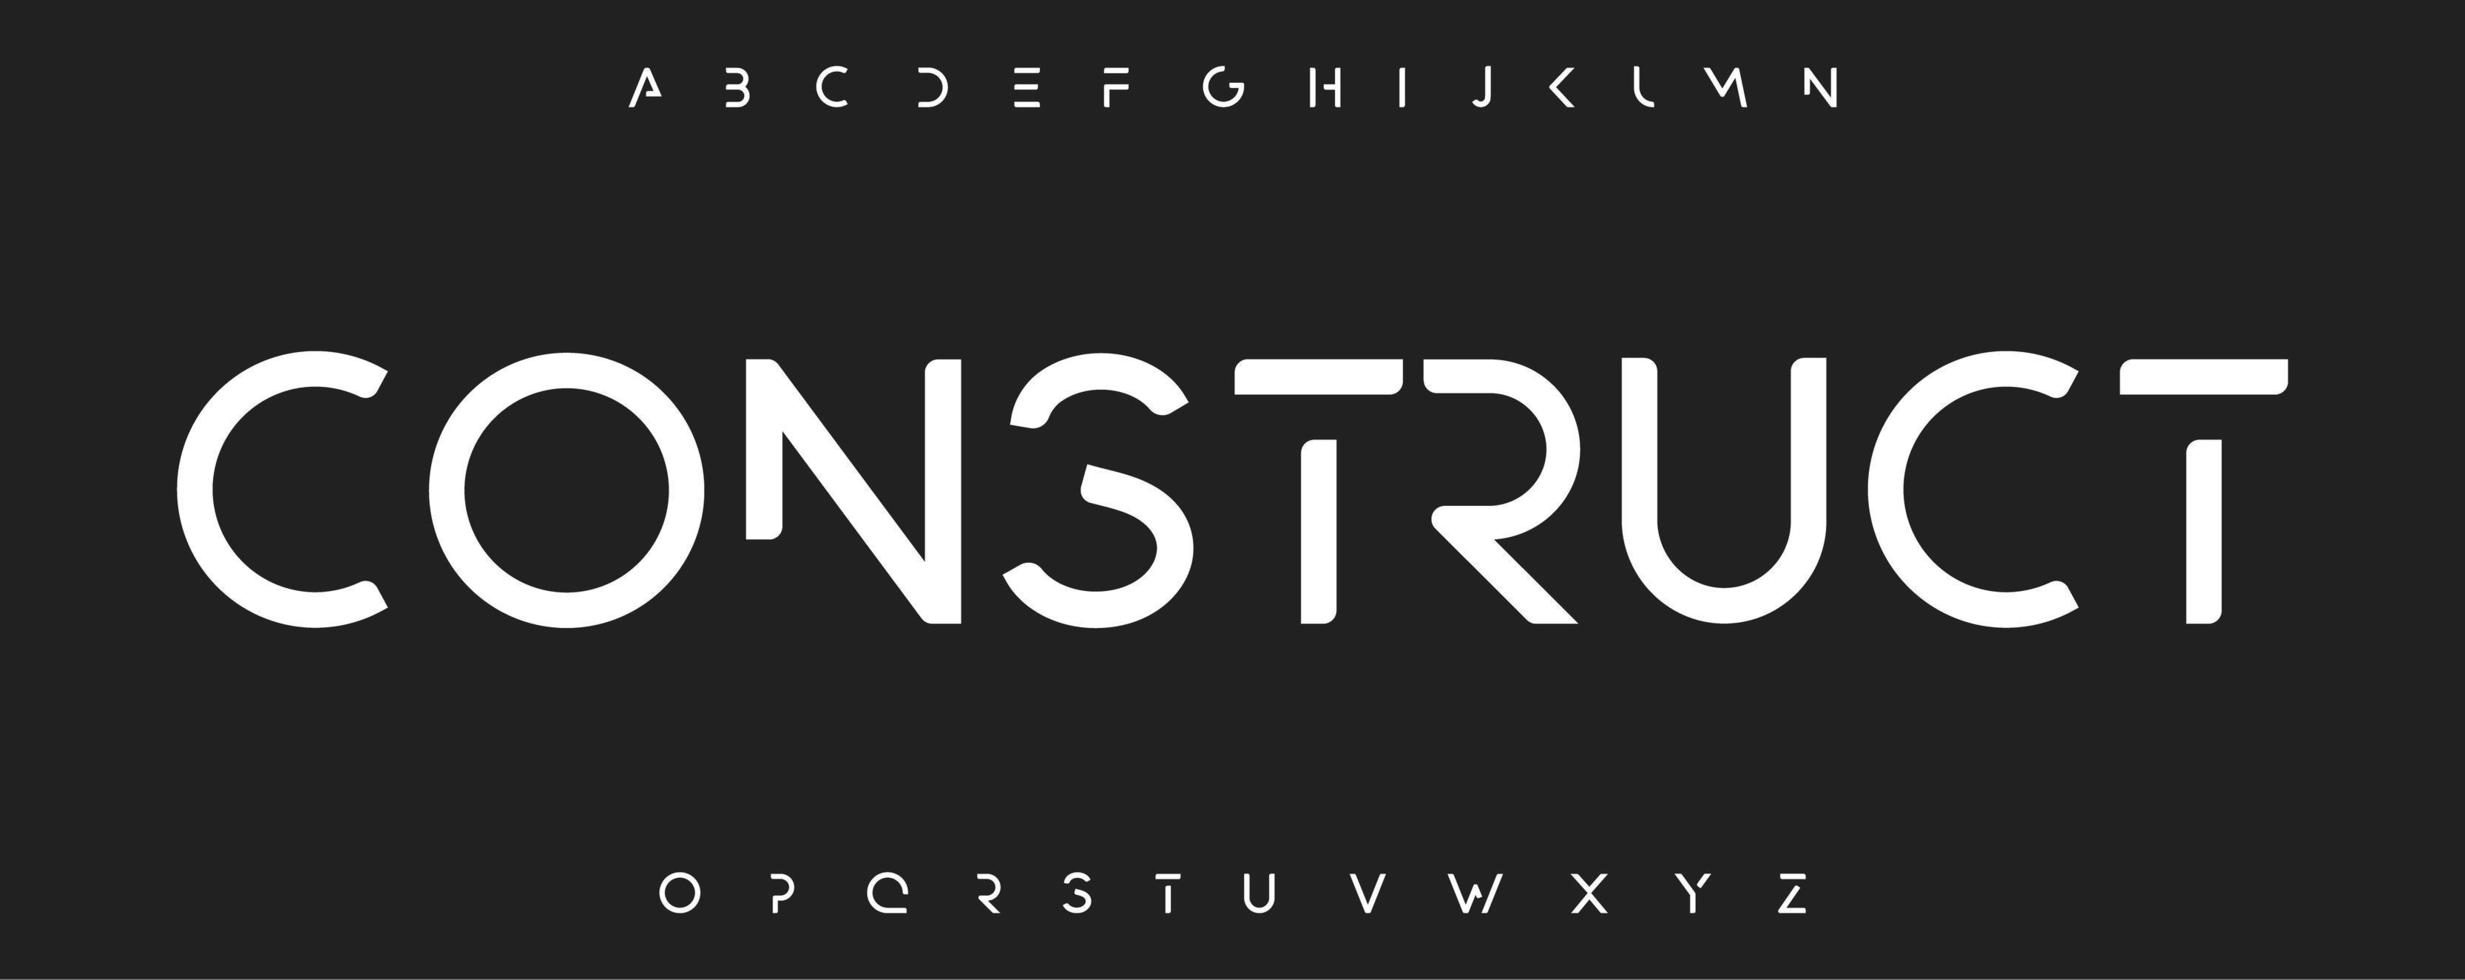 Futurismus Alphabet Bevel Font minimalistische Buchstaben für modernen Futurismus, Sport, Wissenschaftslogo und Monogramm, Schlagzeile, Branding-Typografie, Kleidung und Waren. Vektortypografisches Design vektor